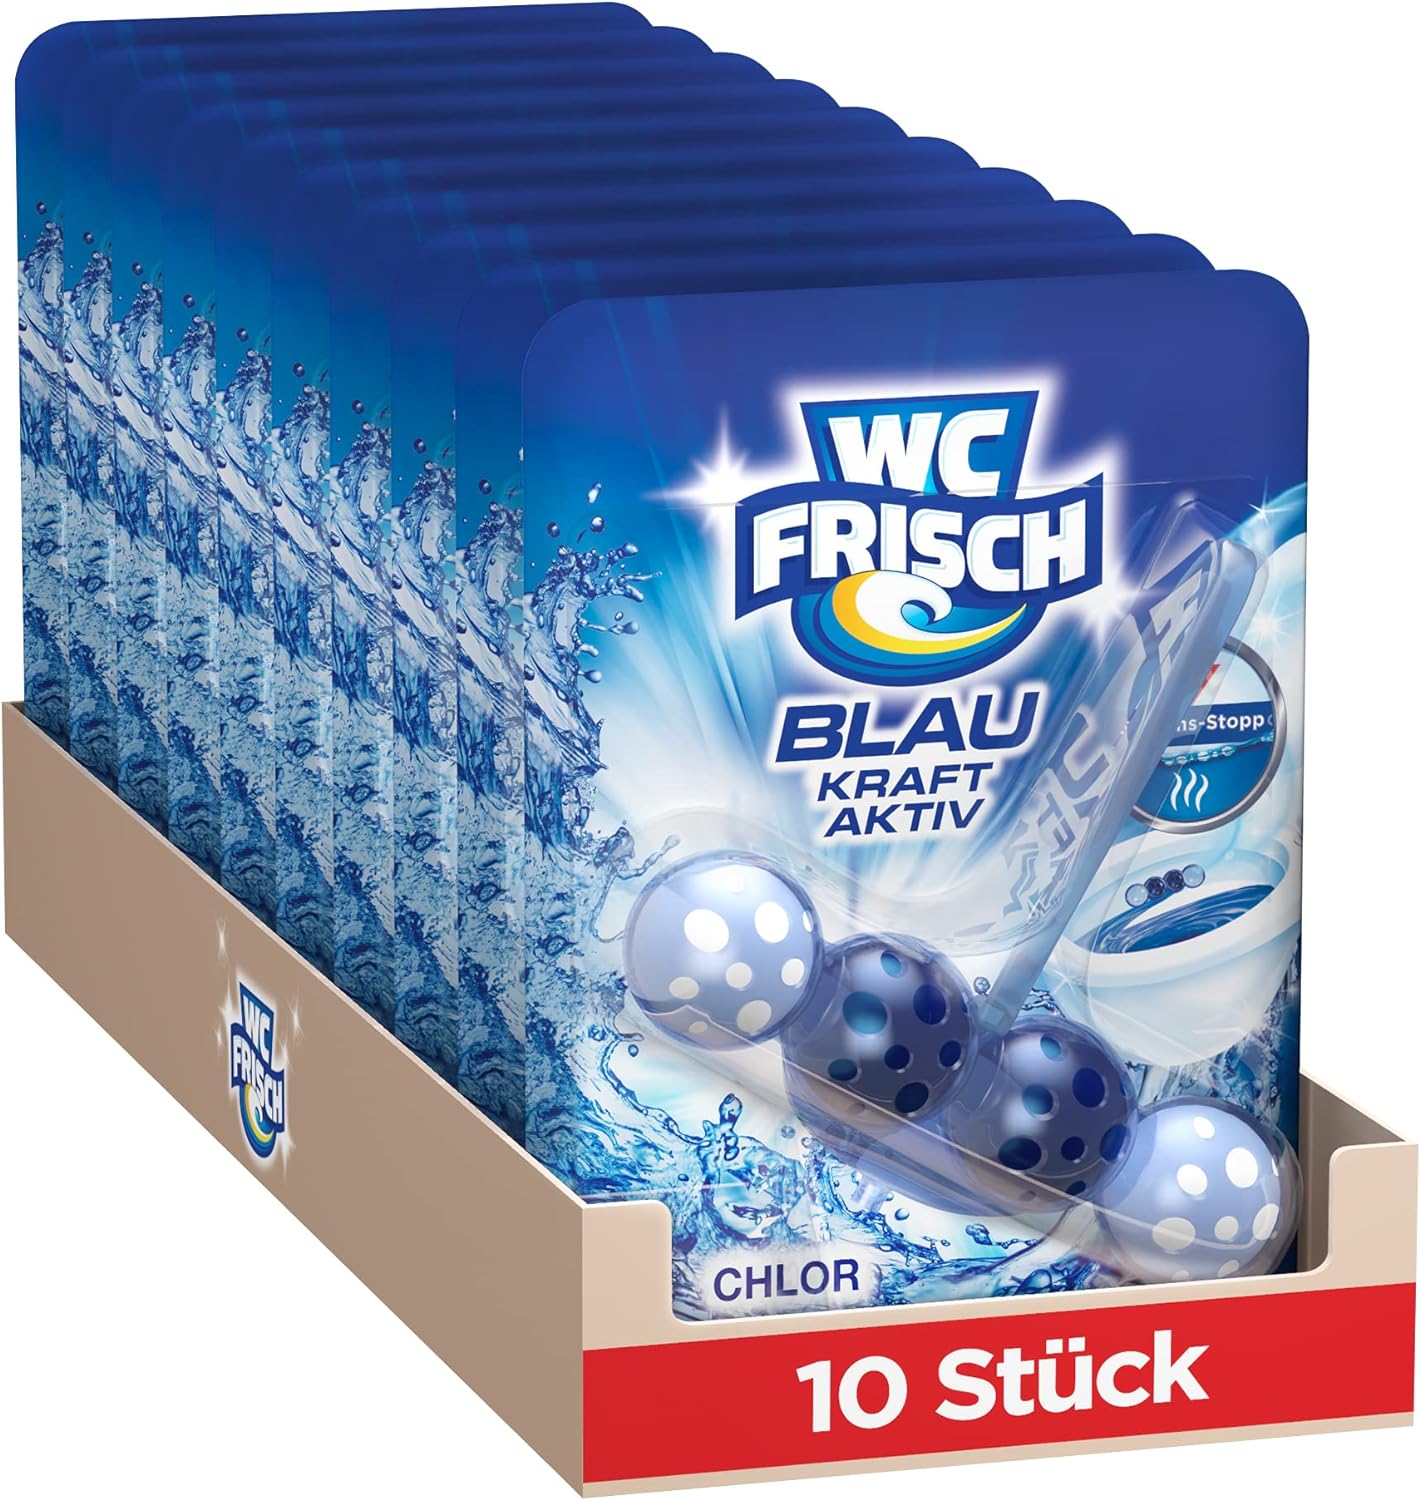 WC frisch Blau Kraft Aktiv Chlor závěsný blok 10x50g-VÝHODNÉ BALENÍ - originál z Německa